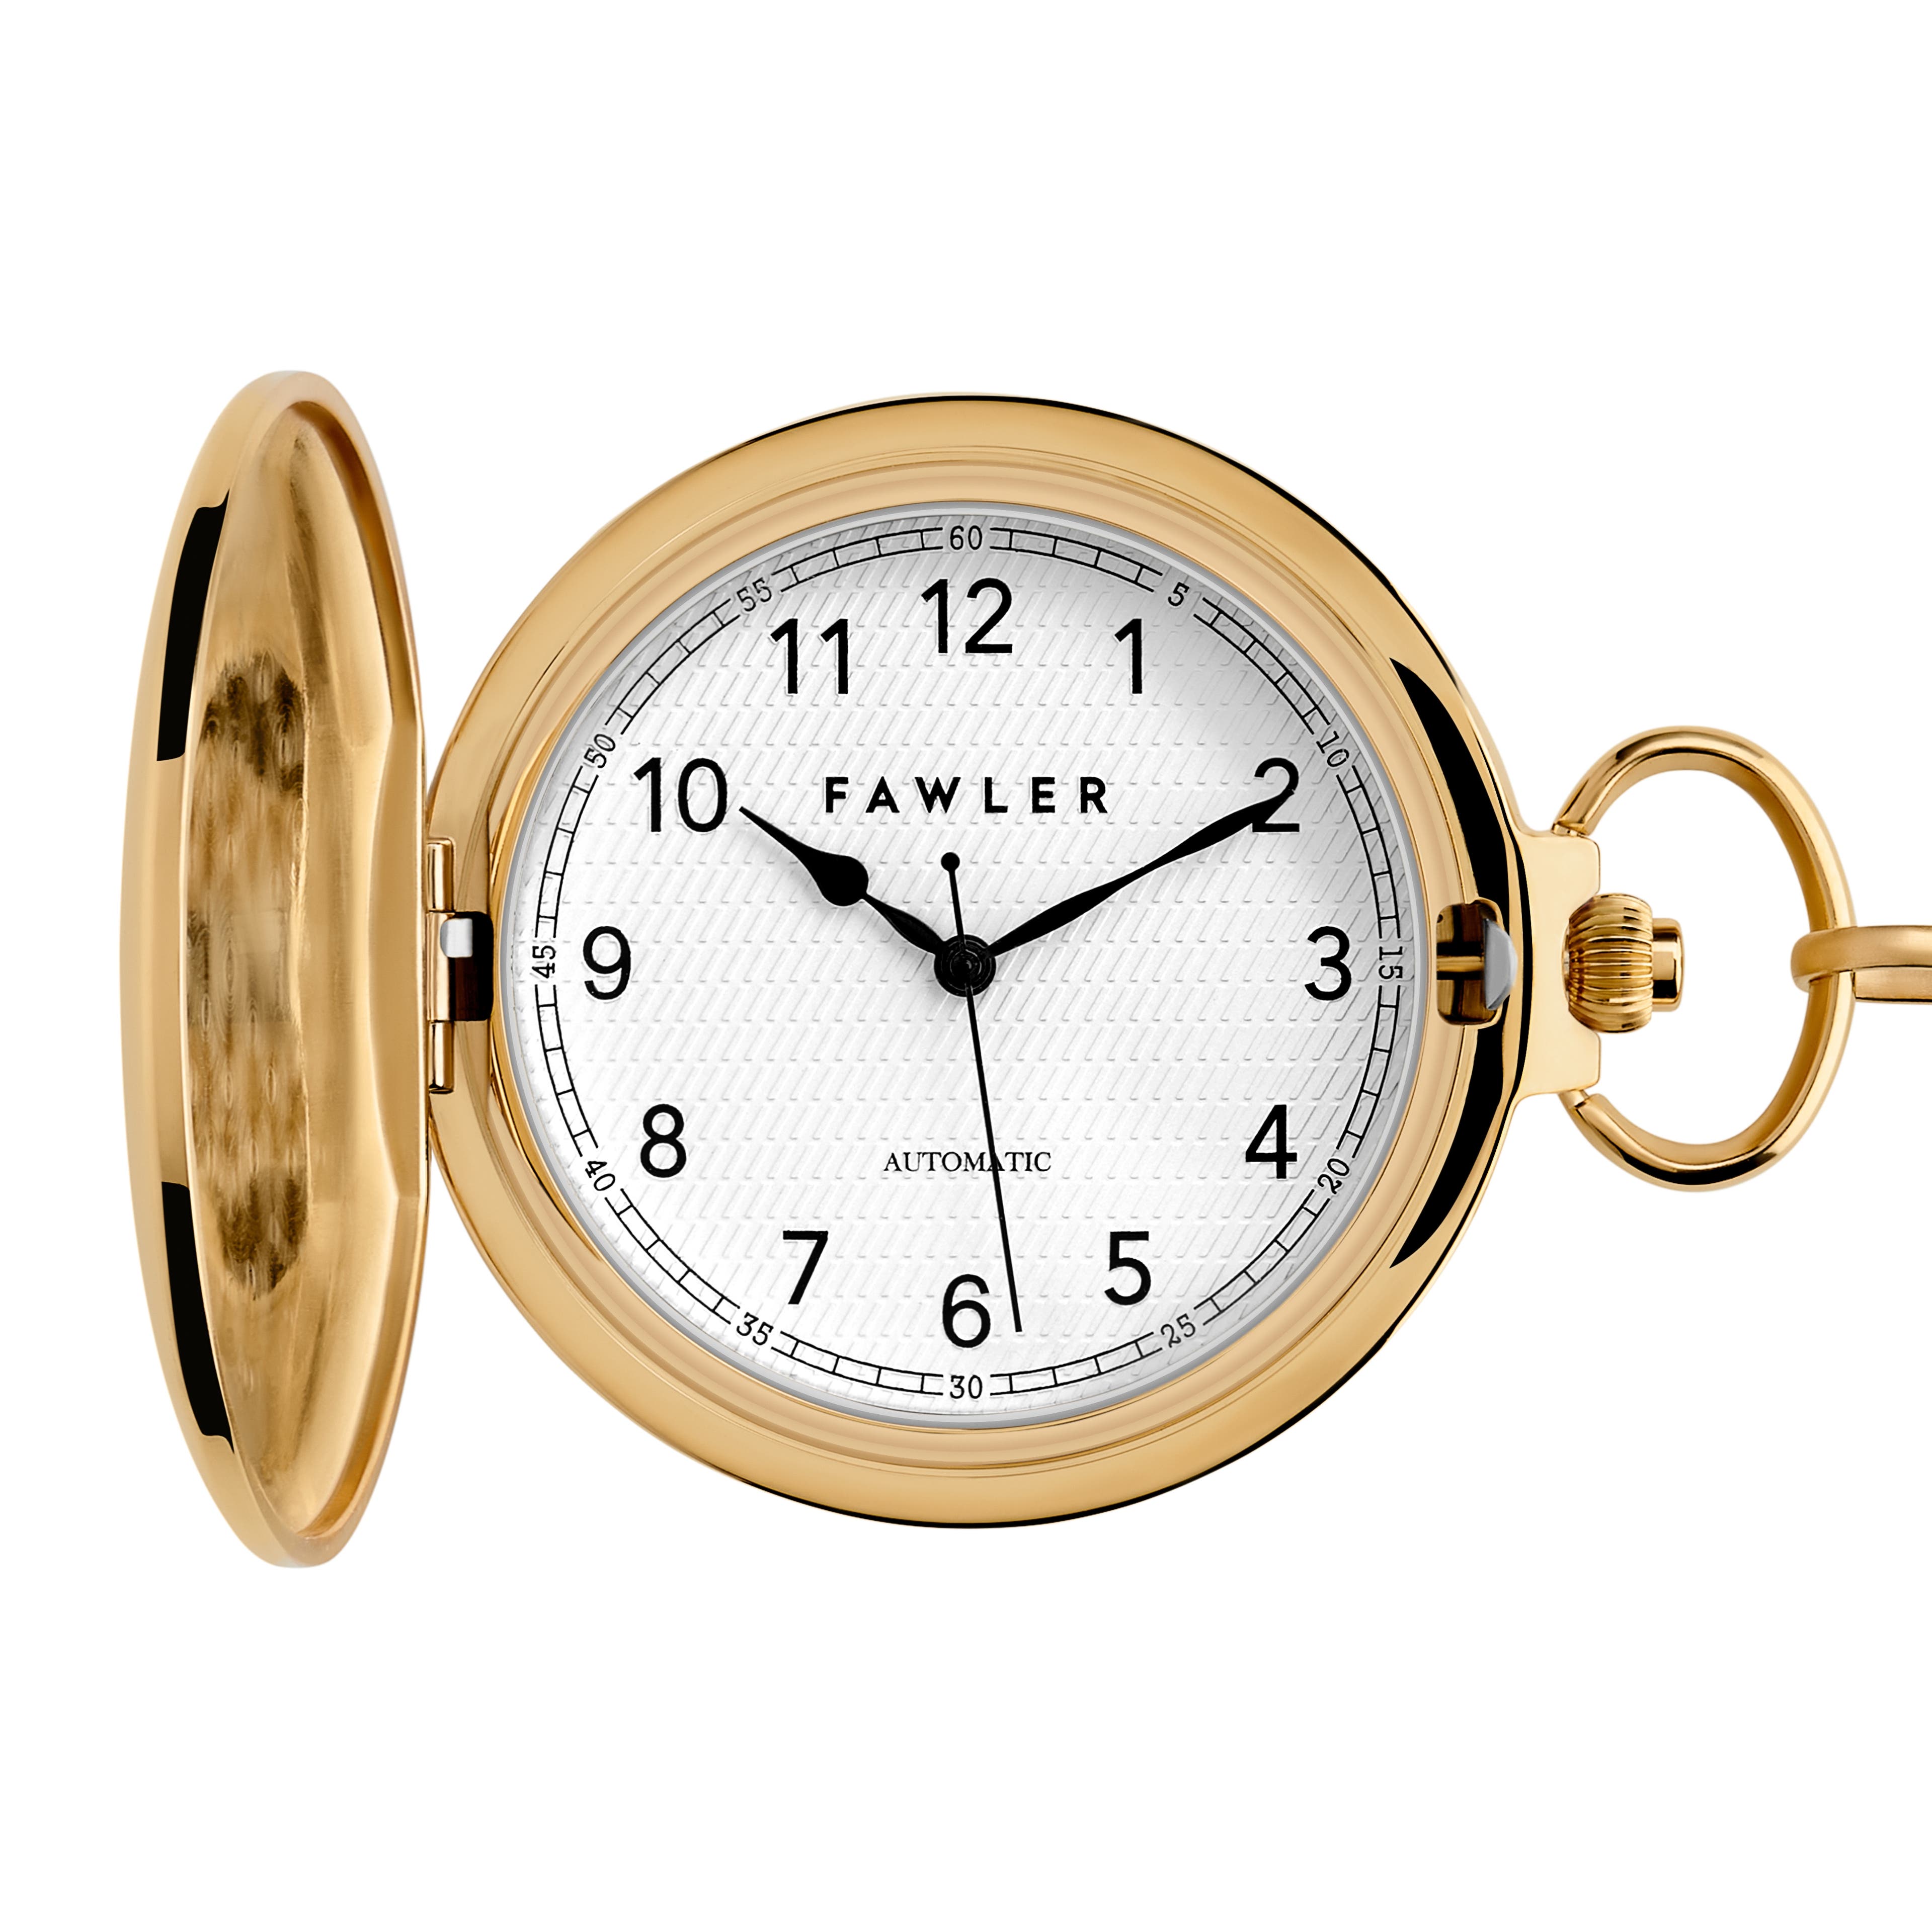 Easton | Reloj de bolsillo automático dorado